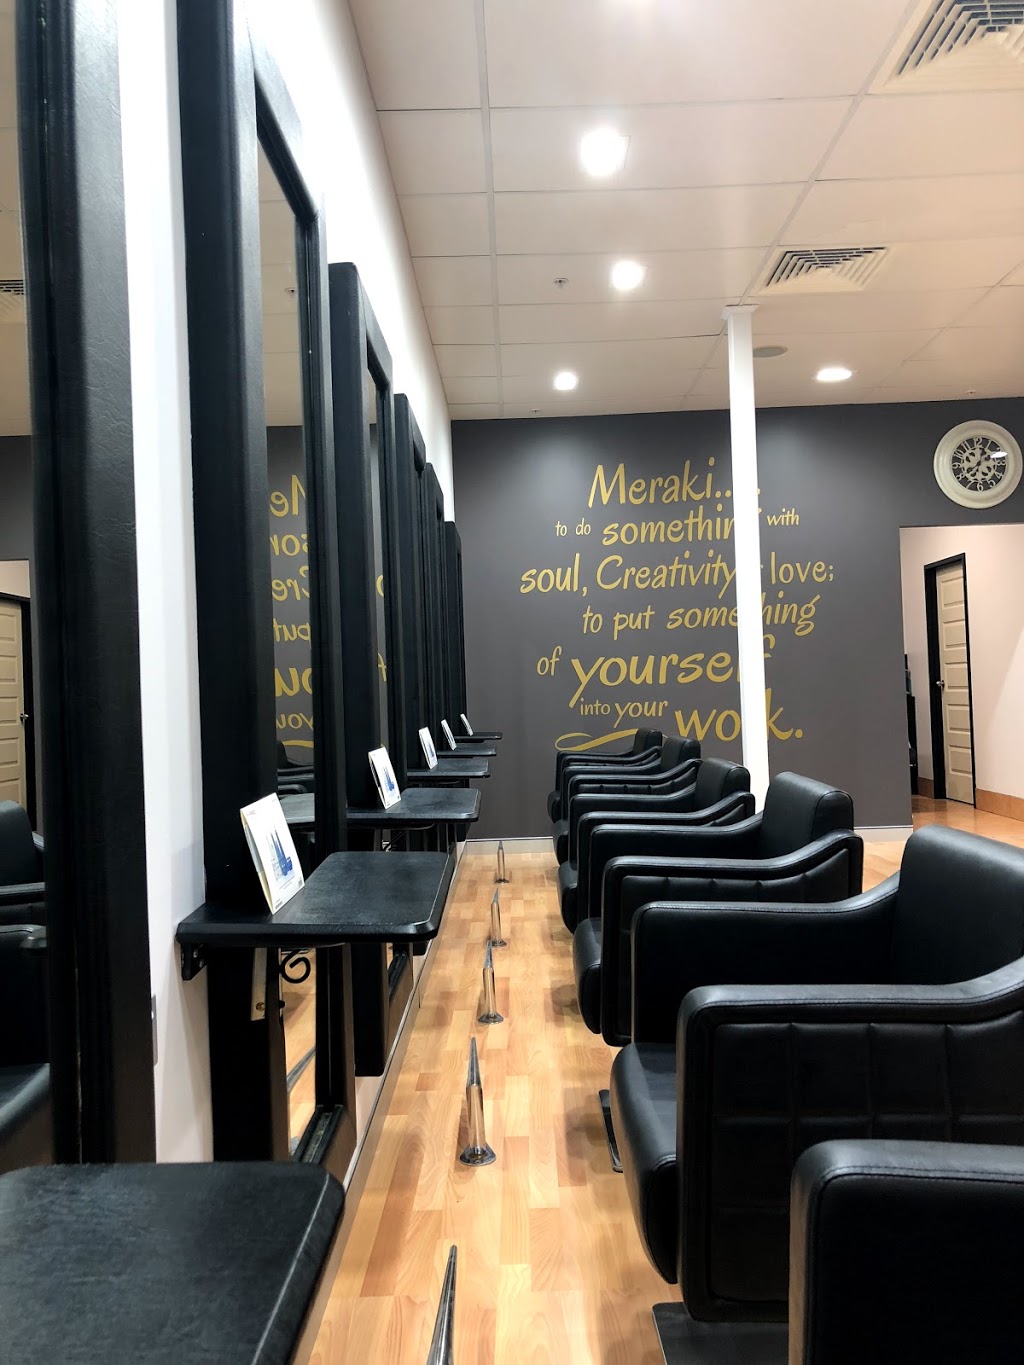 Meraki Hair House | hair care | Shop 6, Swan View Shopping Centre Cnr Gladstone and, Marlboro Rd, Swan View WA 6056, Australia | 0864690230 OR +61 8 6469 0230